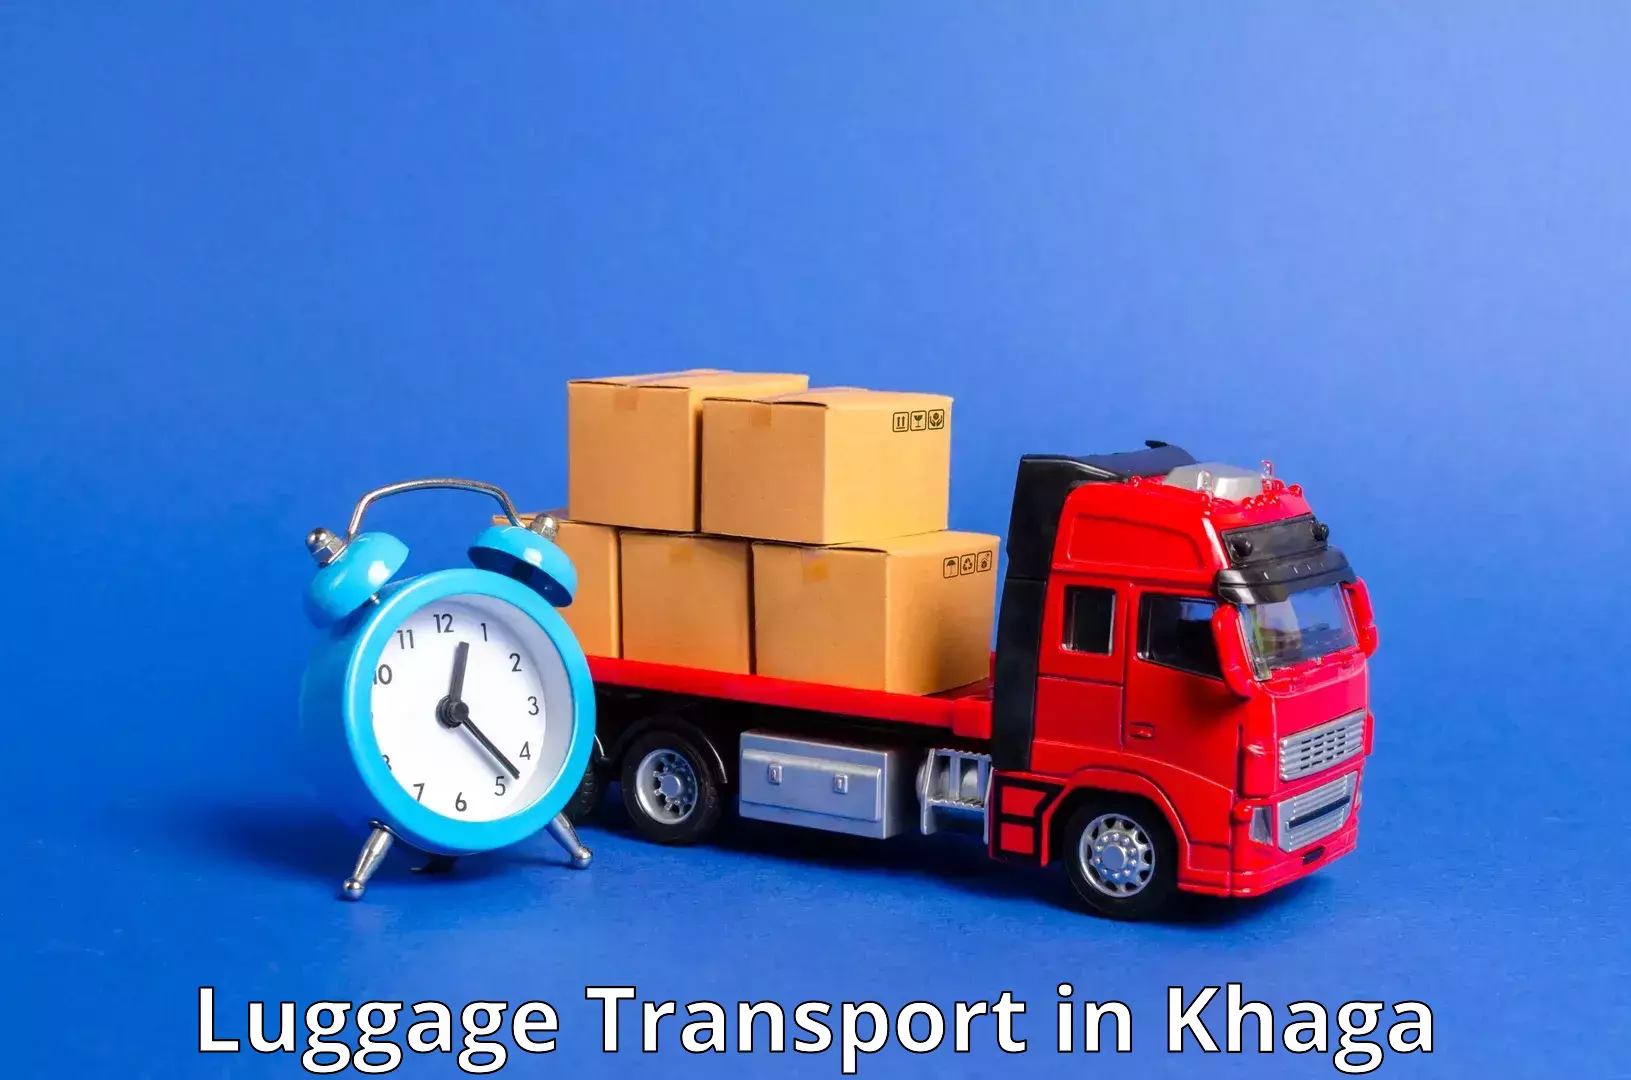 Regional luggage transport in Khaga